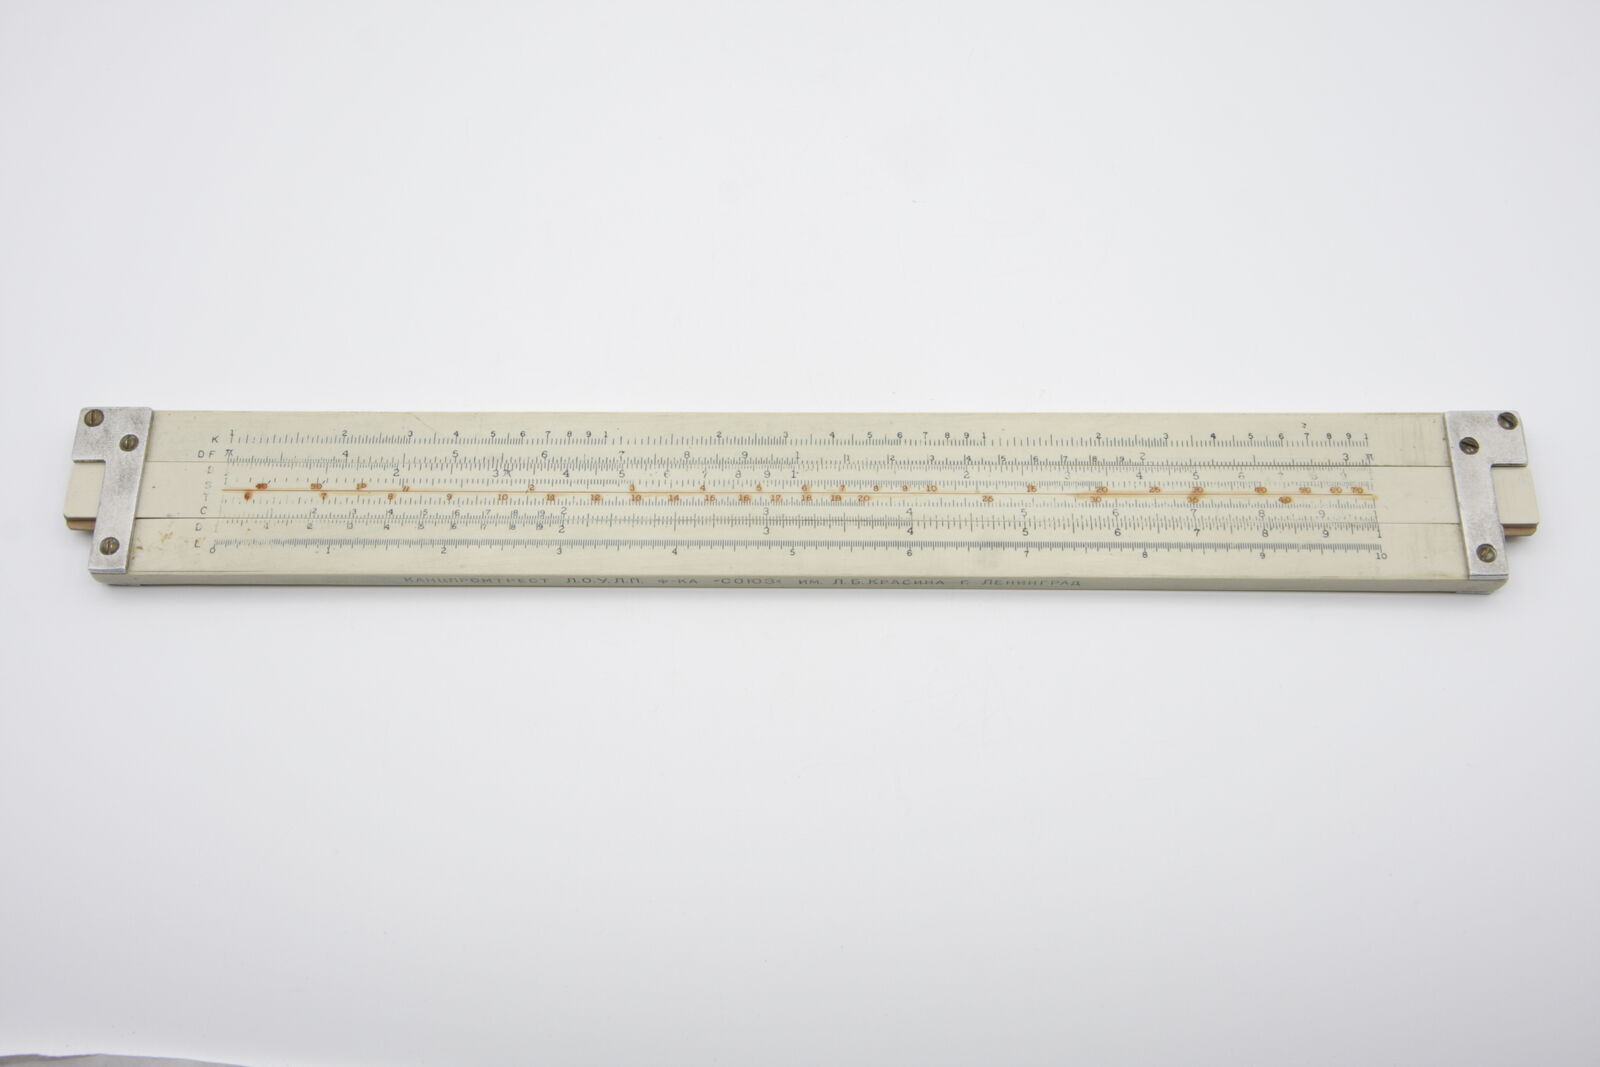 Slide Rule Vintage Soviet Logarithmic Ruler Manual Analog Calculator USSR